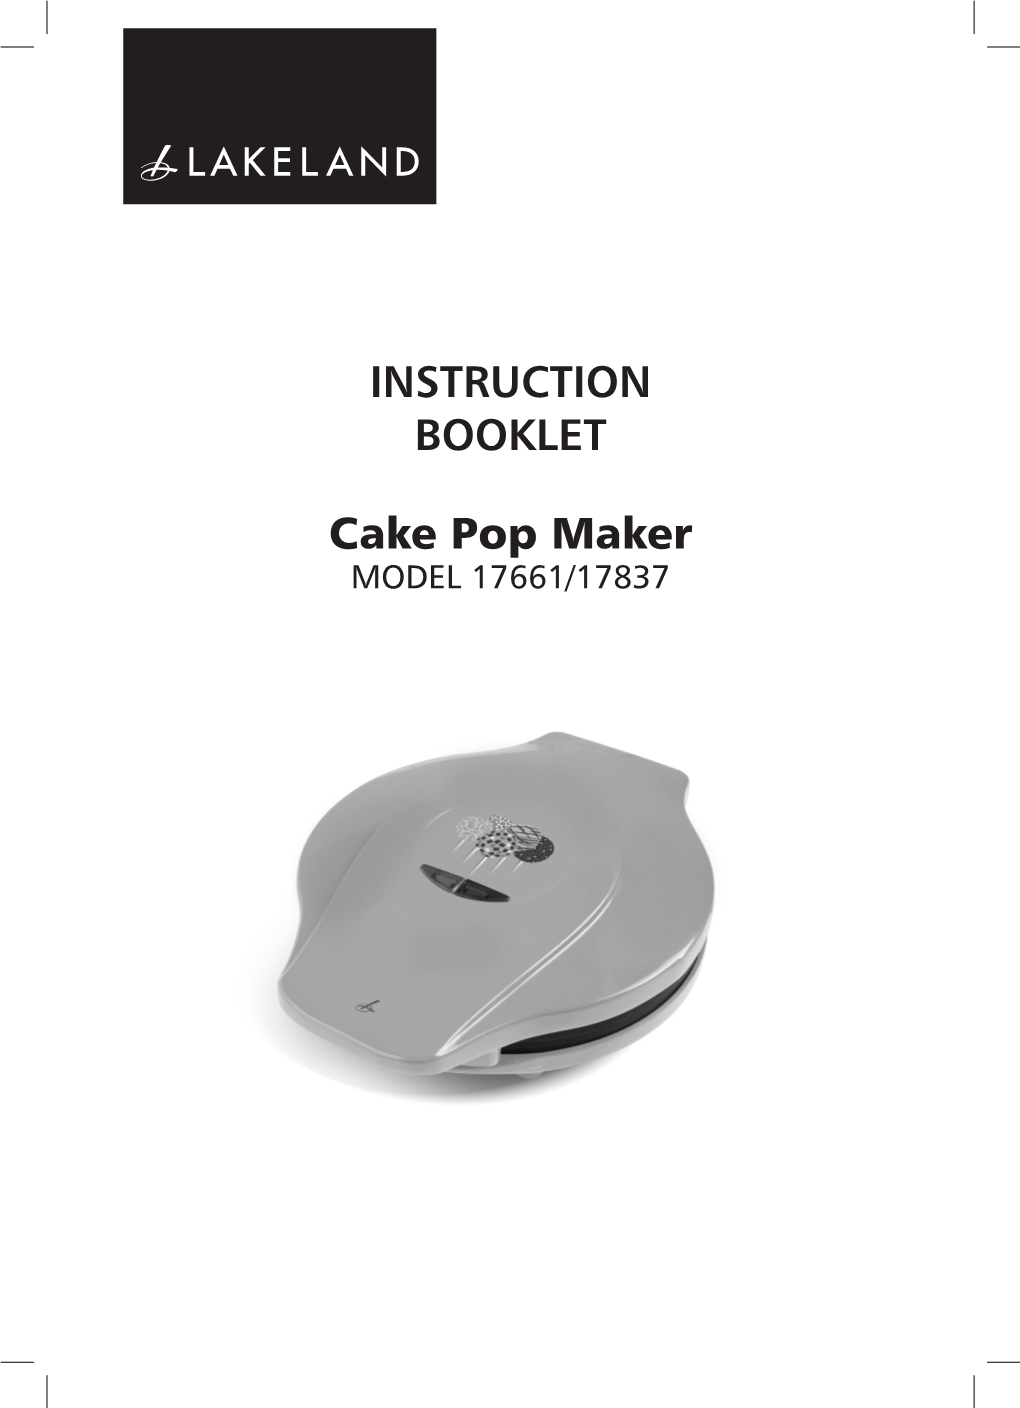 INSTRUCTION BOOKLET Cake Pop Maker